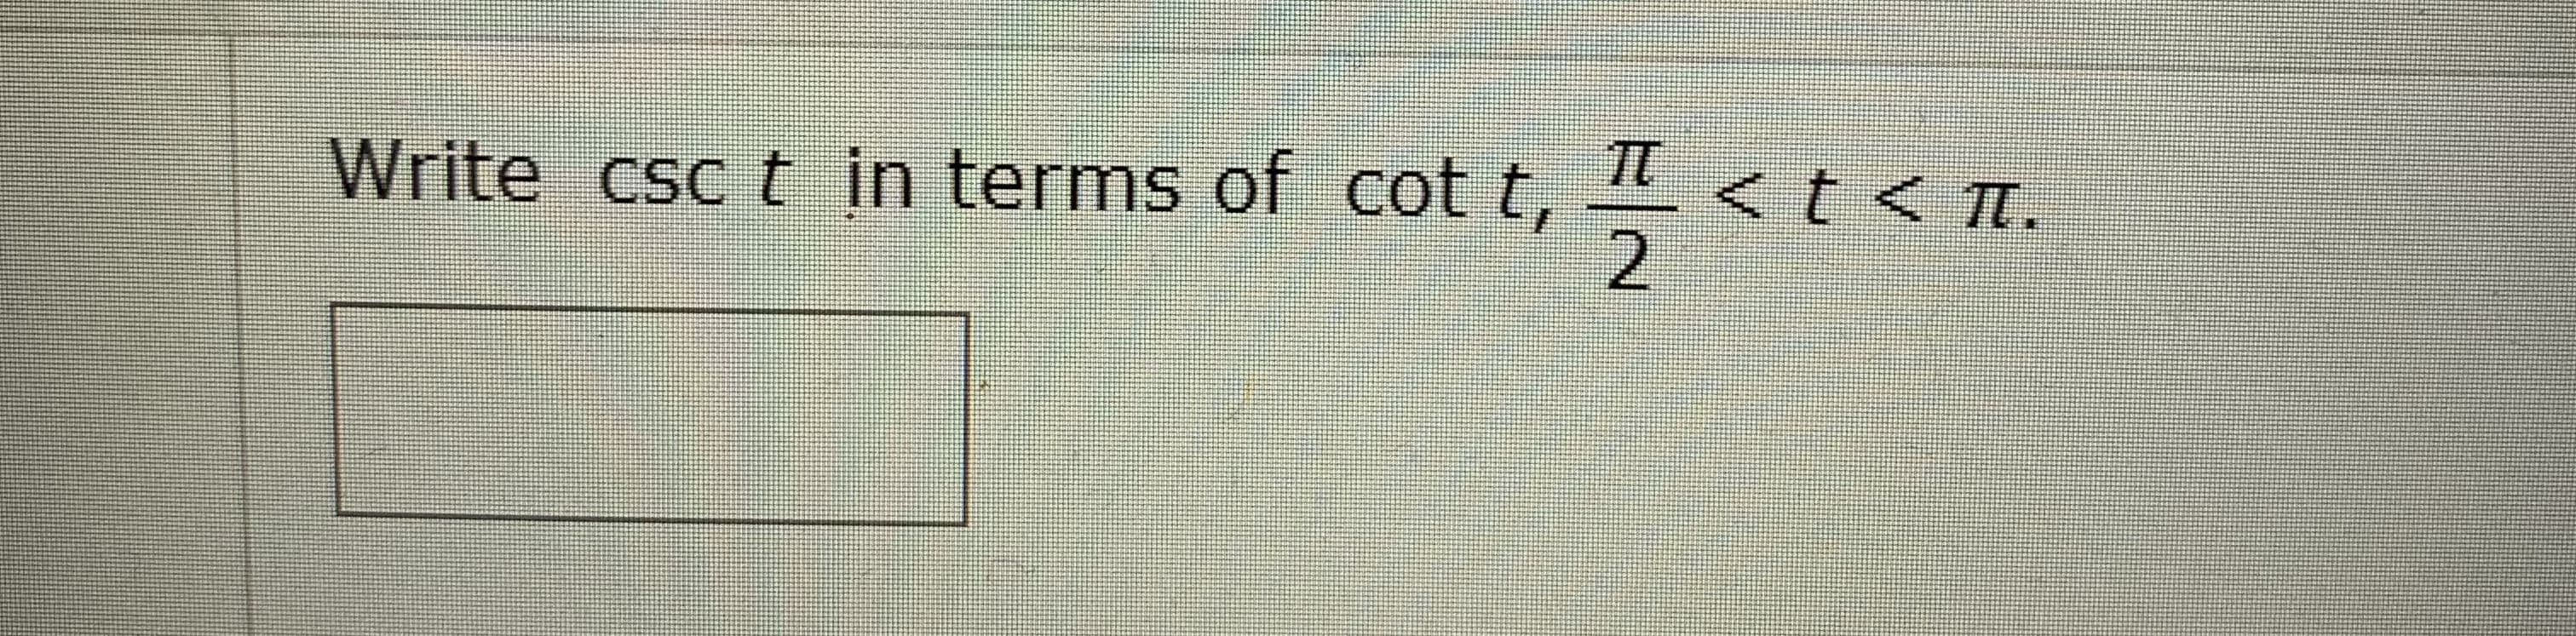 TT
Write csc t in terms of cot t,
<t<Tt.
2.
